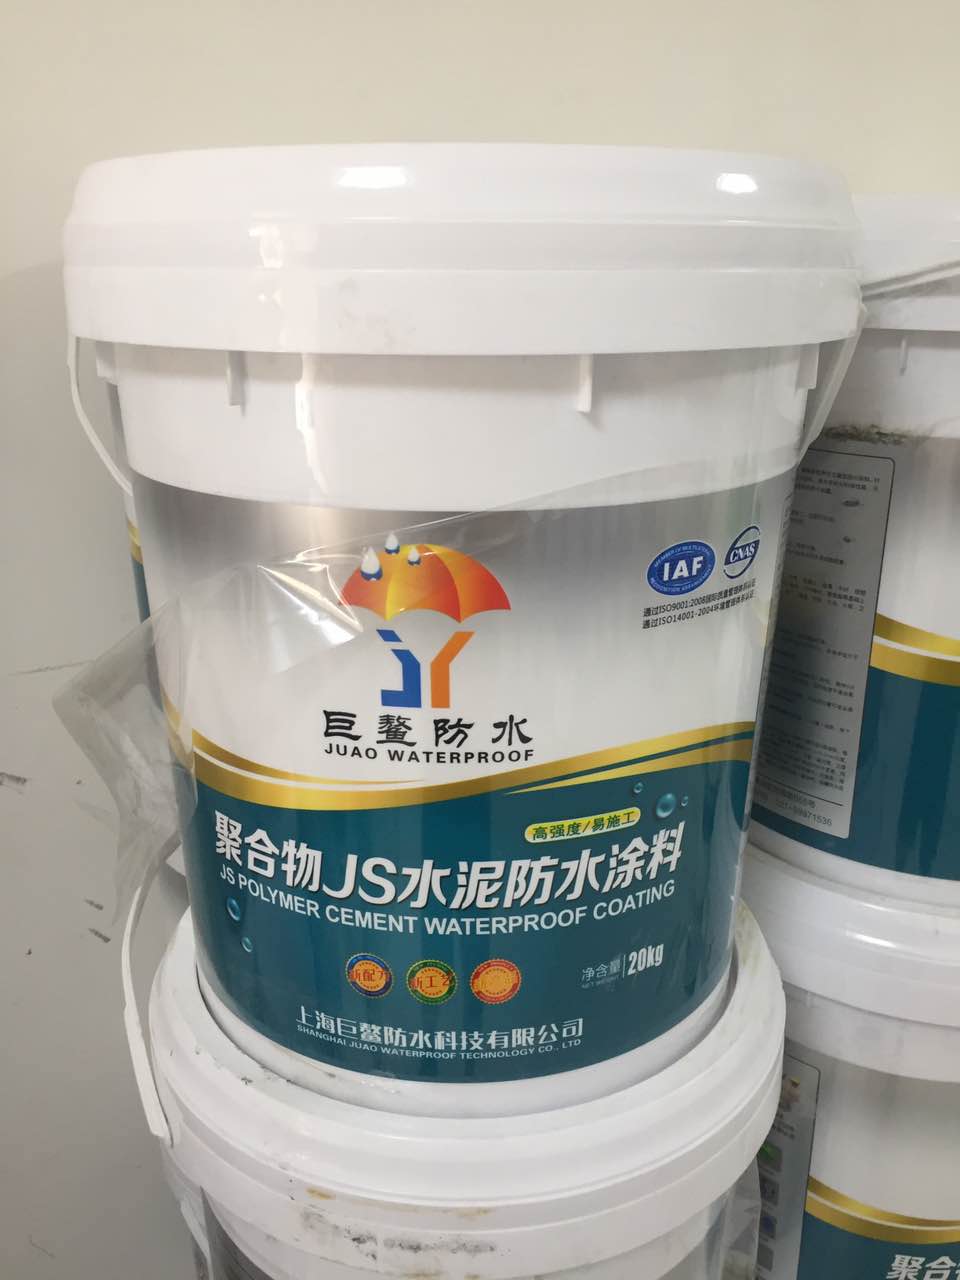 聚合物JS柔韧性防水涂料20公斤厂家直销 源头产品 质量保证 价格优越图片